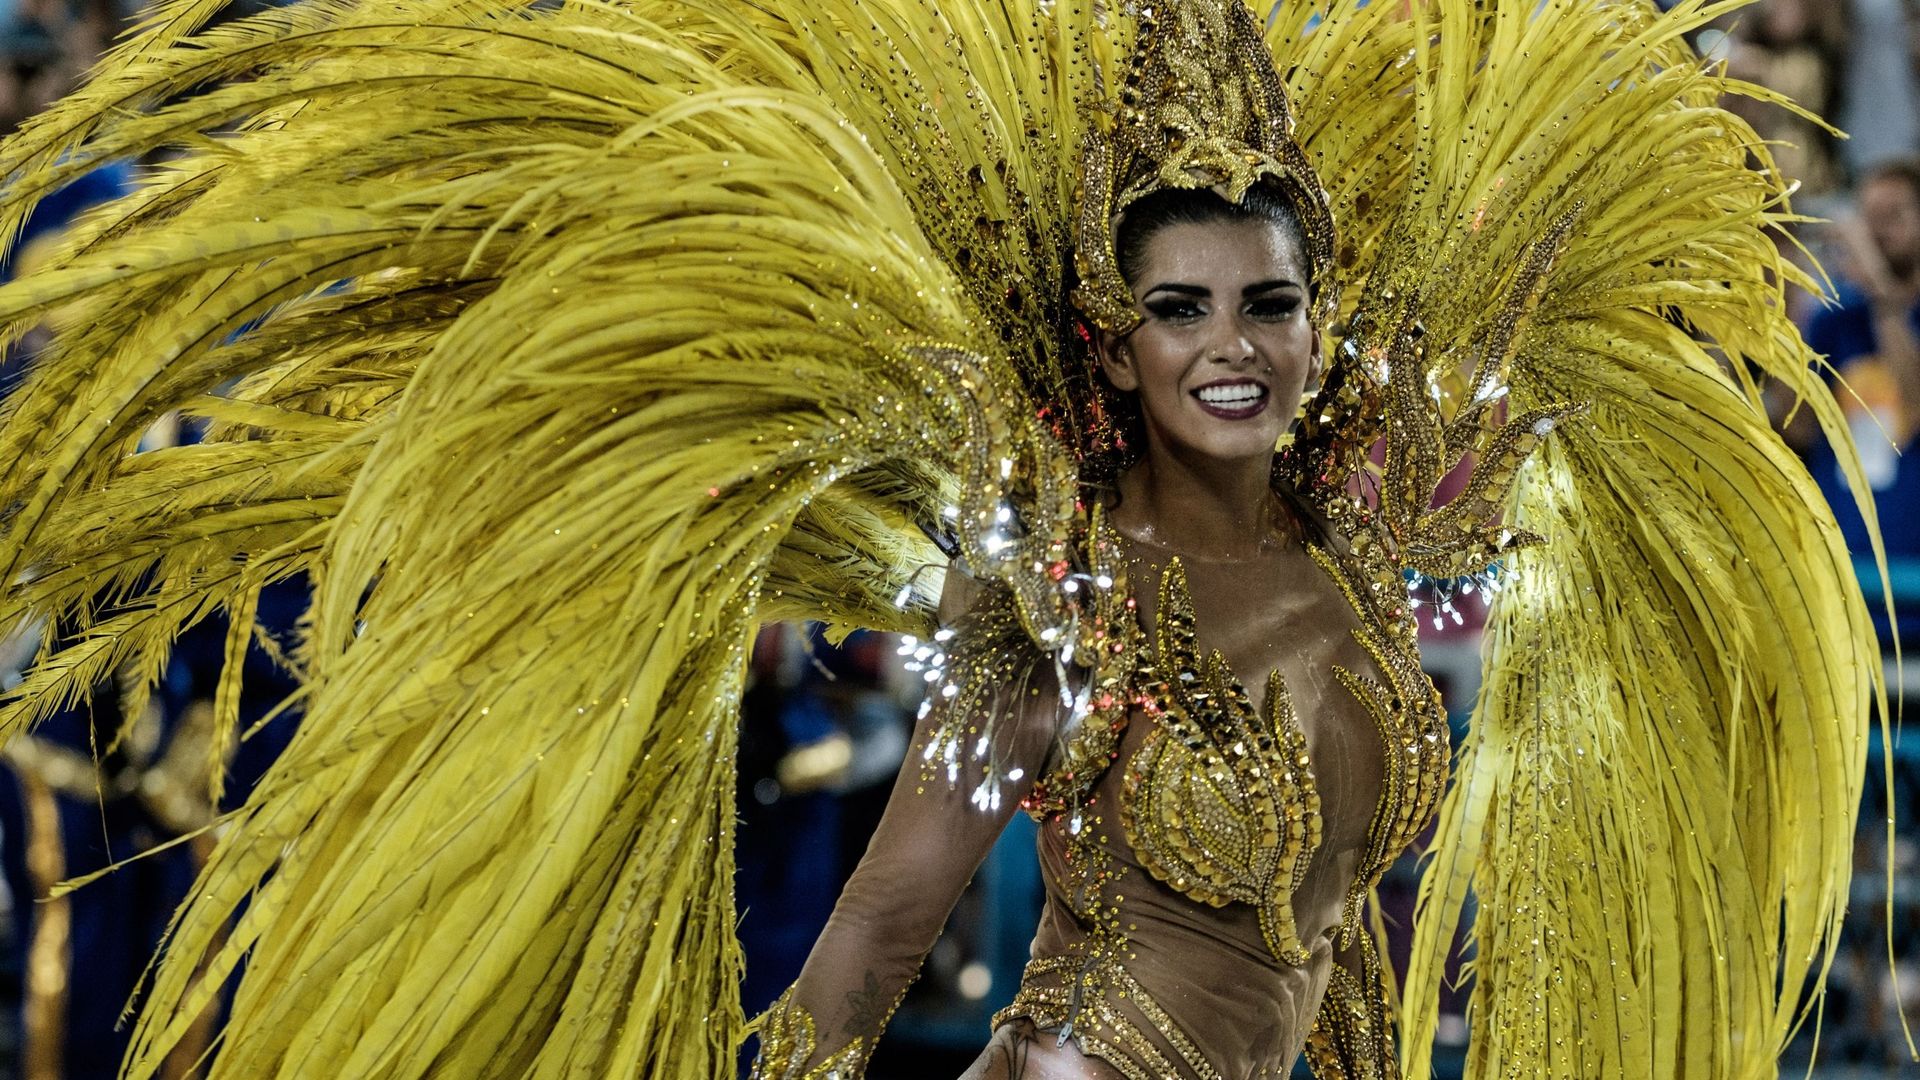 En mode carnaval brésilien avec cette reprise en wallon de "I Go to Rio"